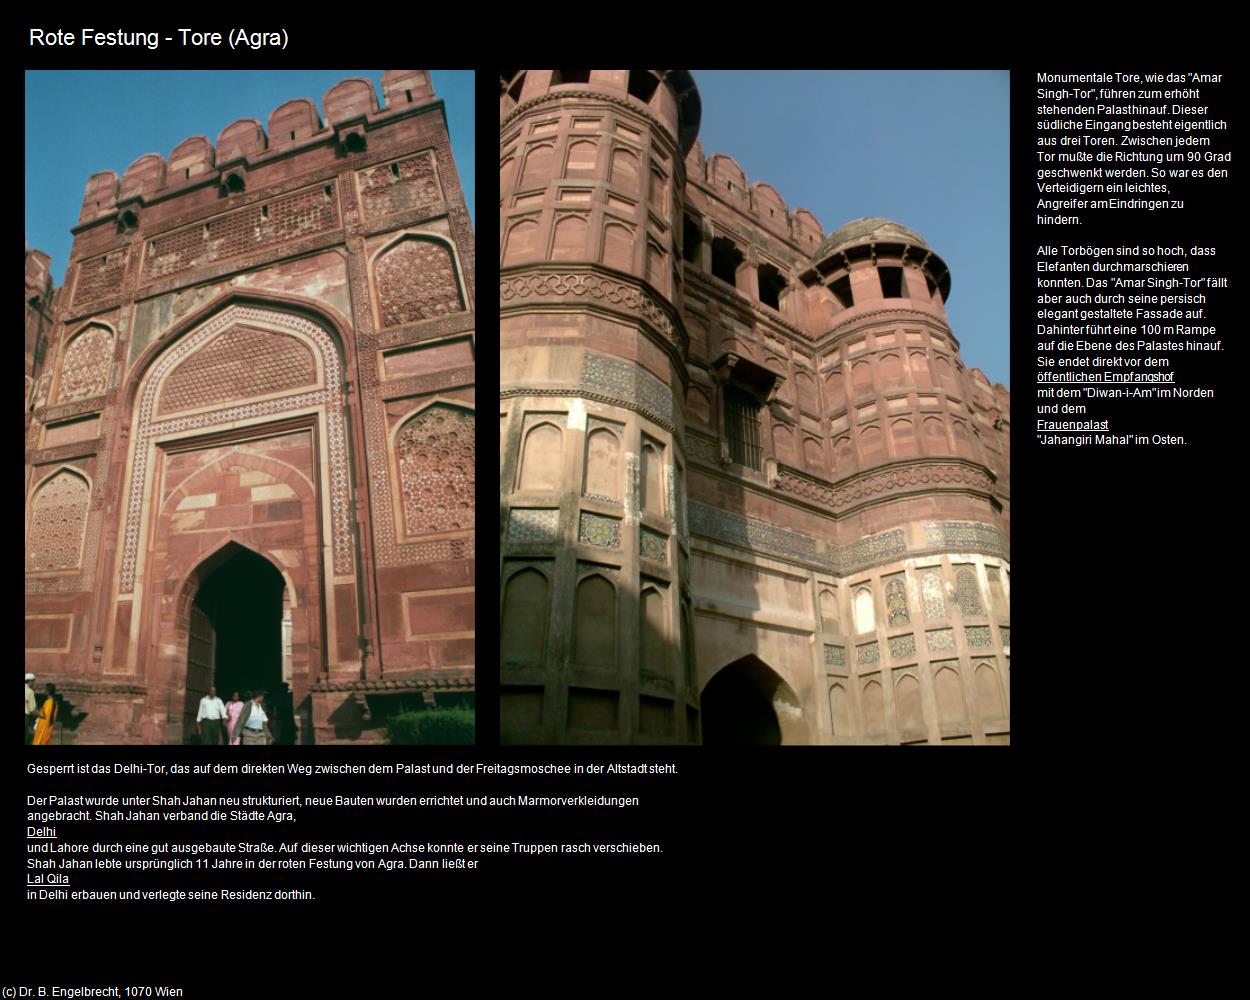 Rote Festung - Tore (Agra) in Rajasthan - das Land der Könige(c)B.Engelbrecht